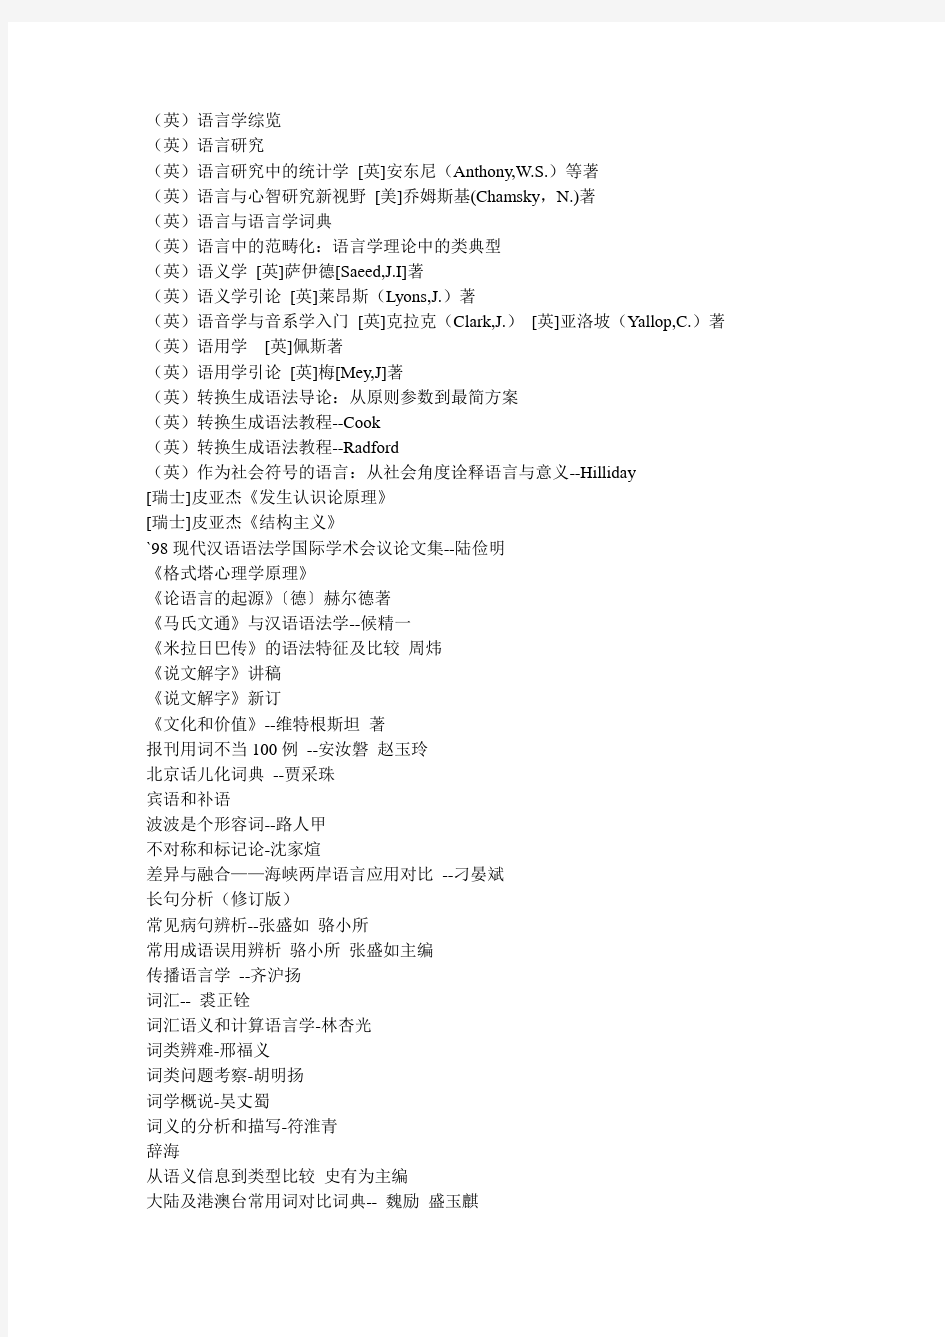 中国语言学必读必备书目400种(DOC)